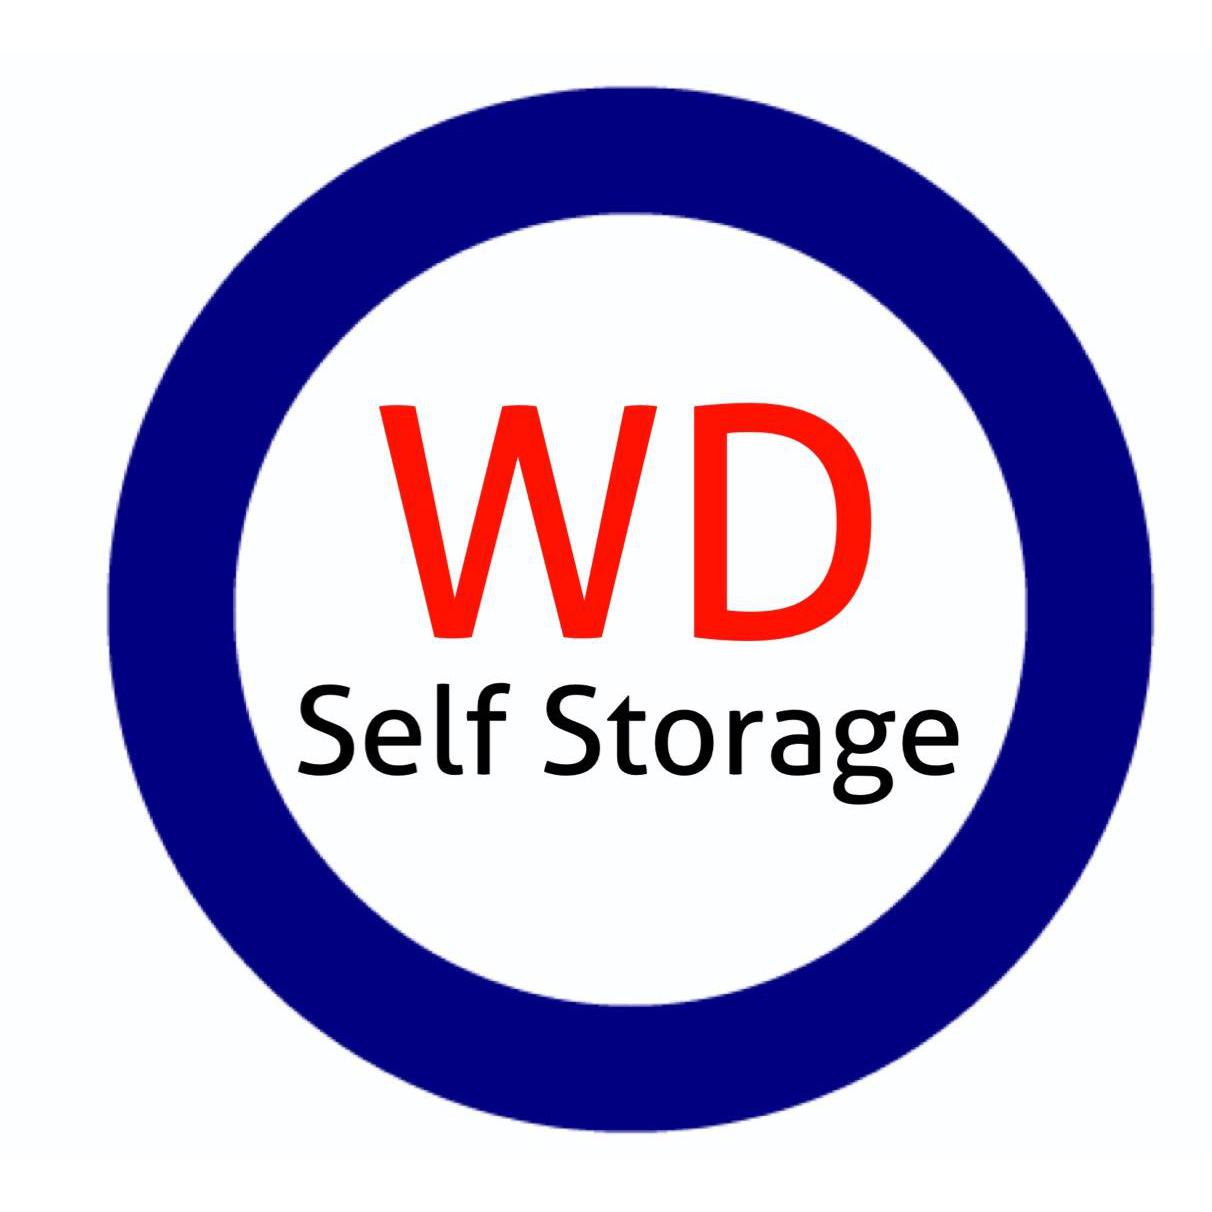 WD Self Storage - Hamilton, VIC 3300 - 0431 536 256 | ShowMeLocal.com